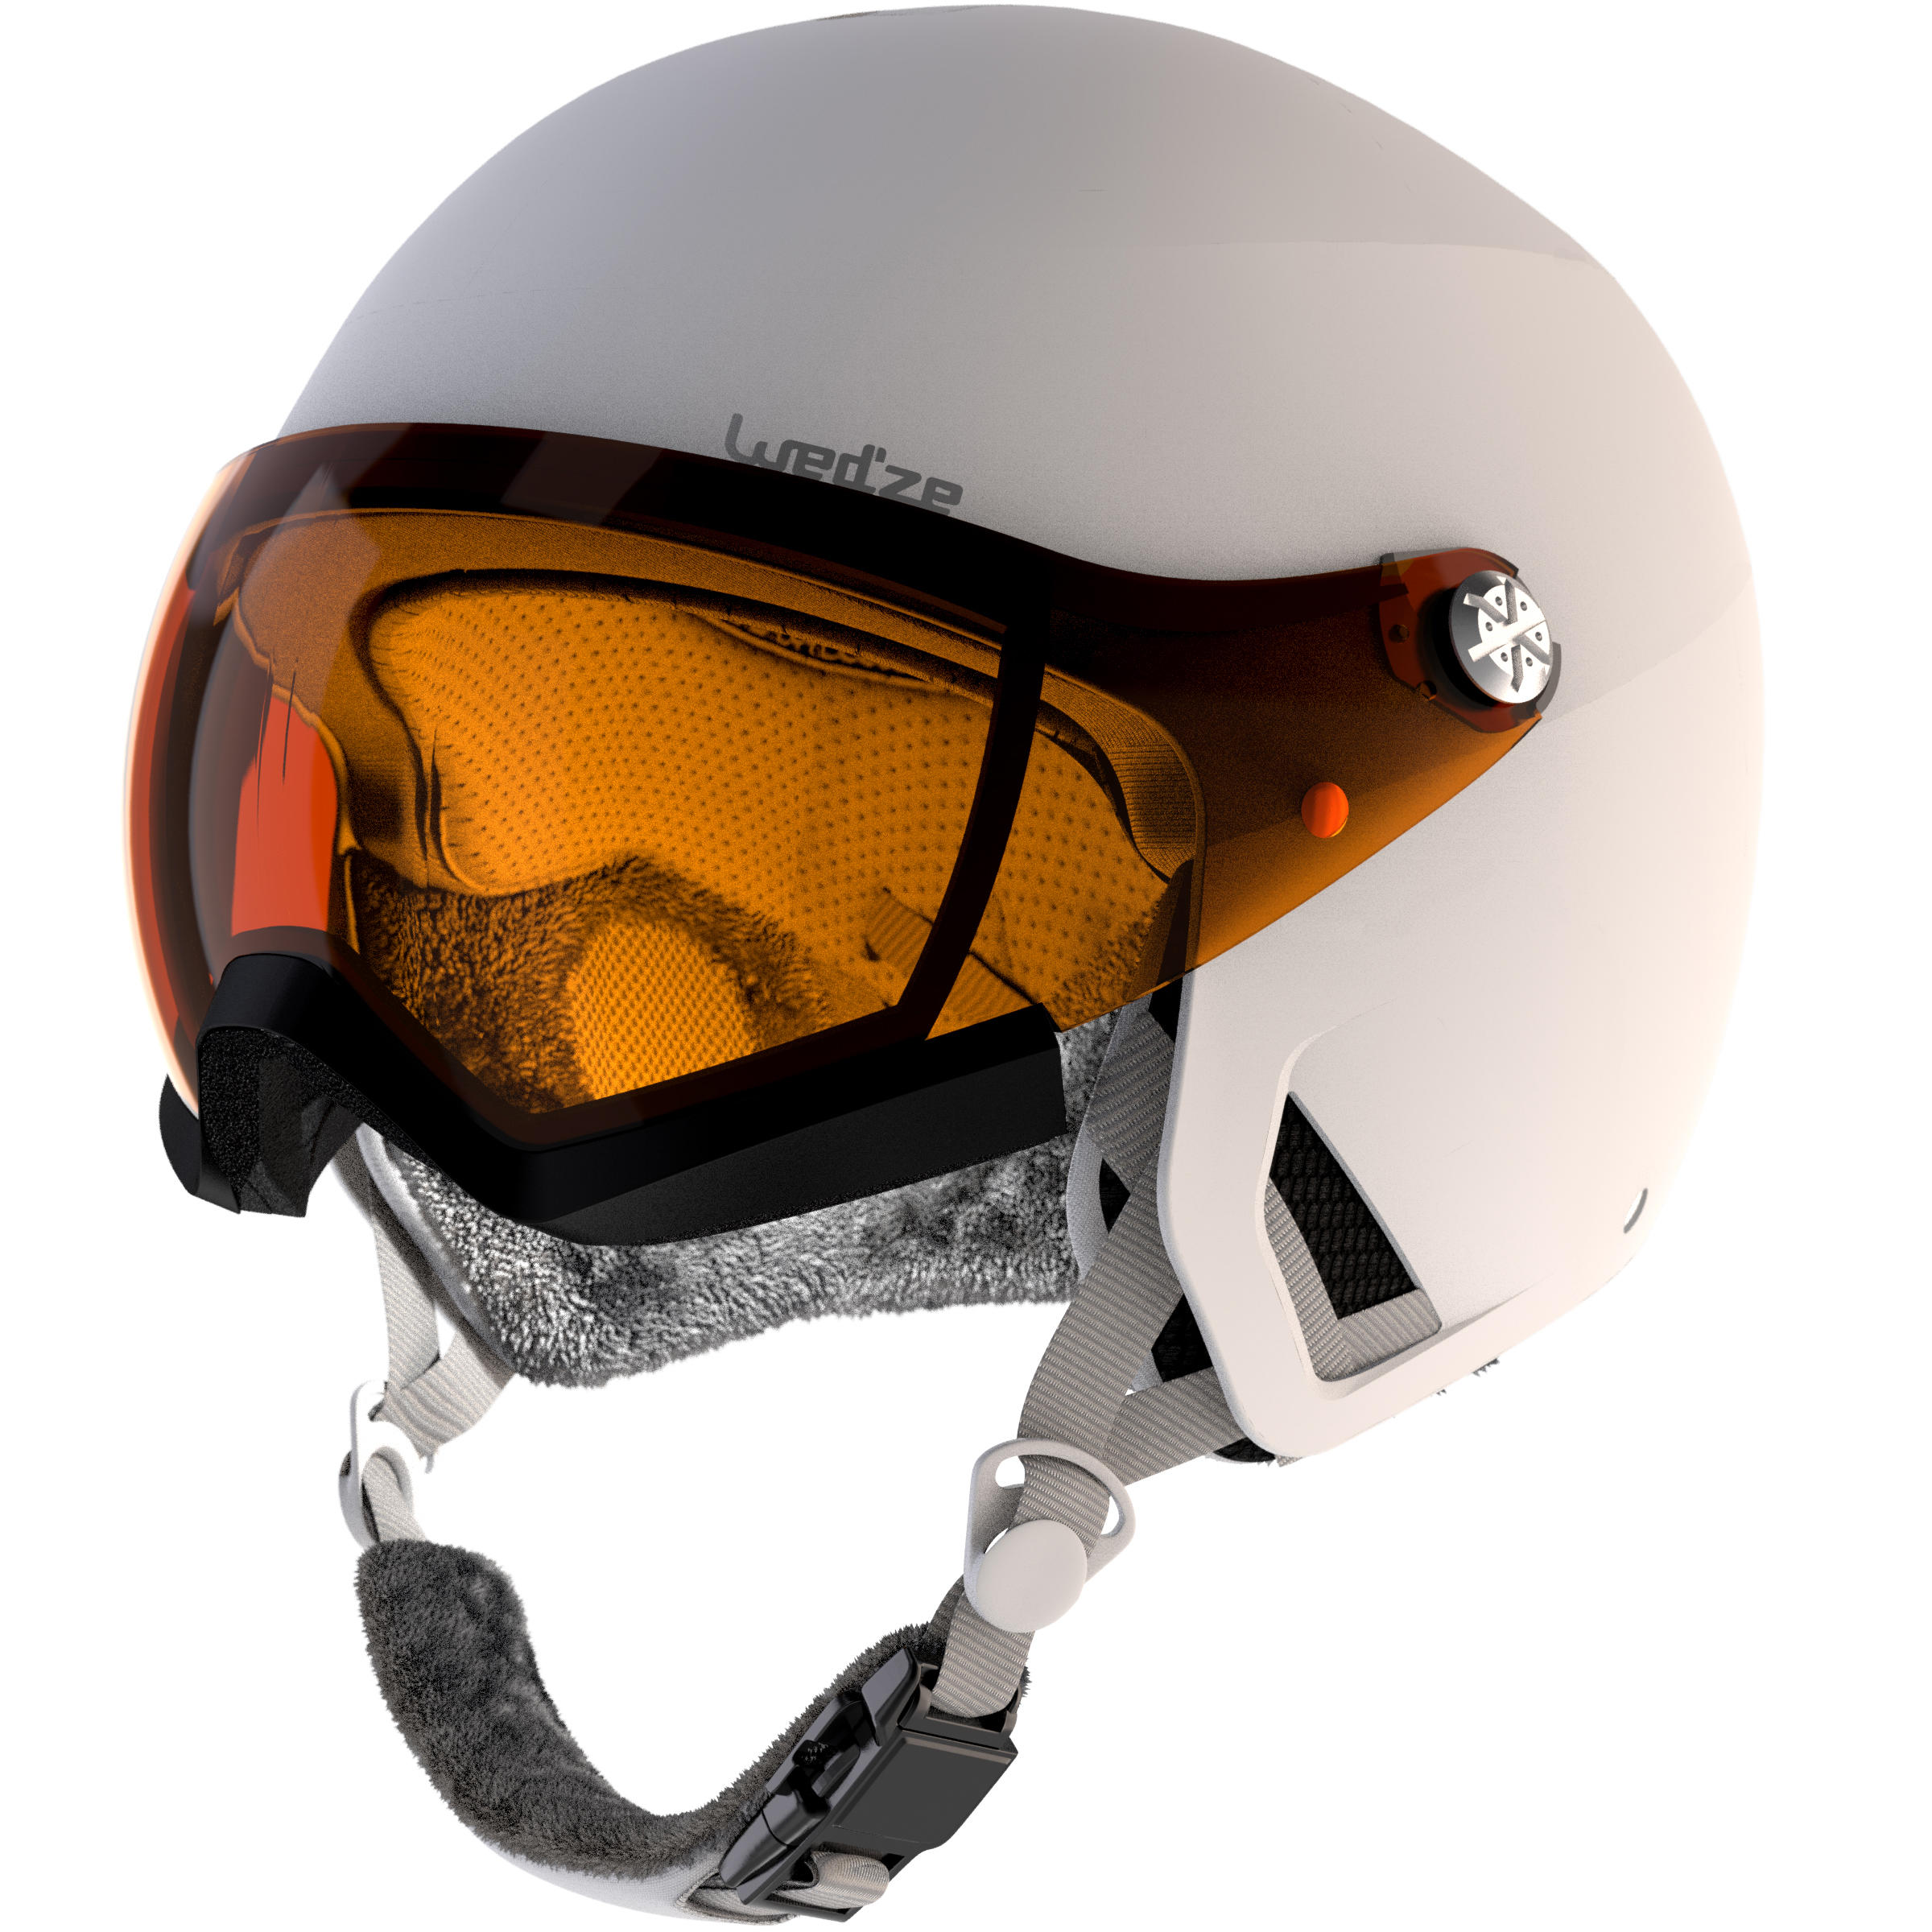 Adult Skiing Helmet Visor 5/6